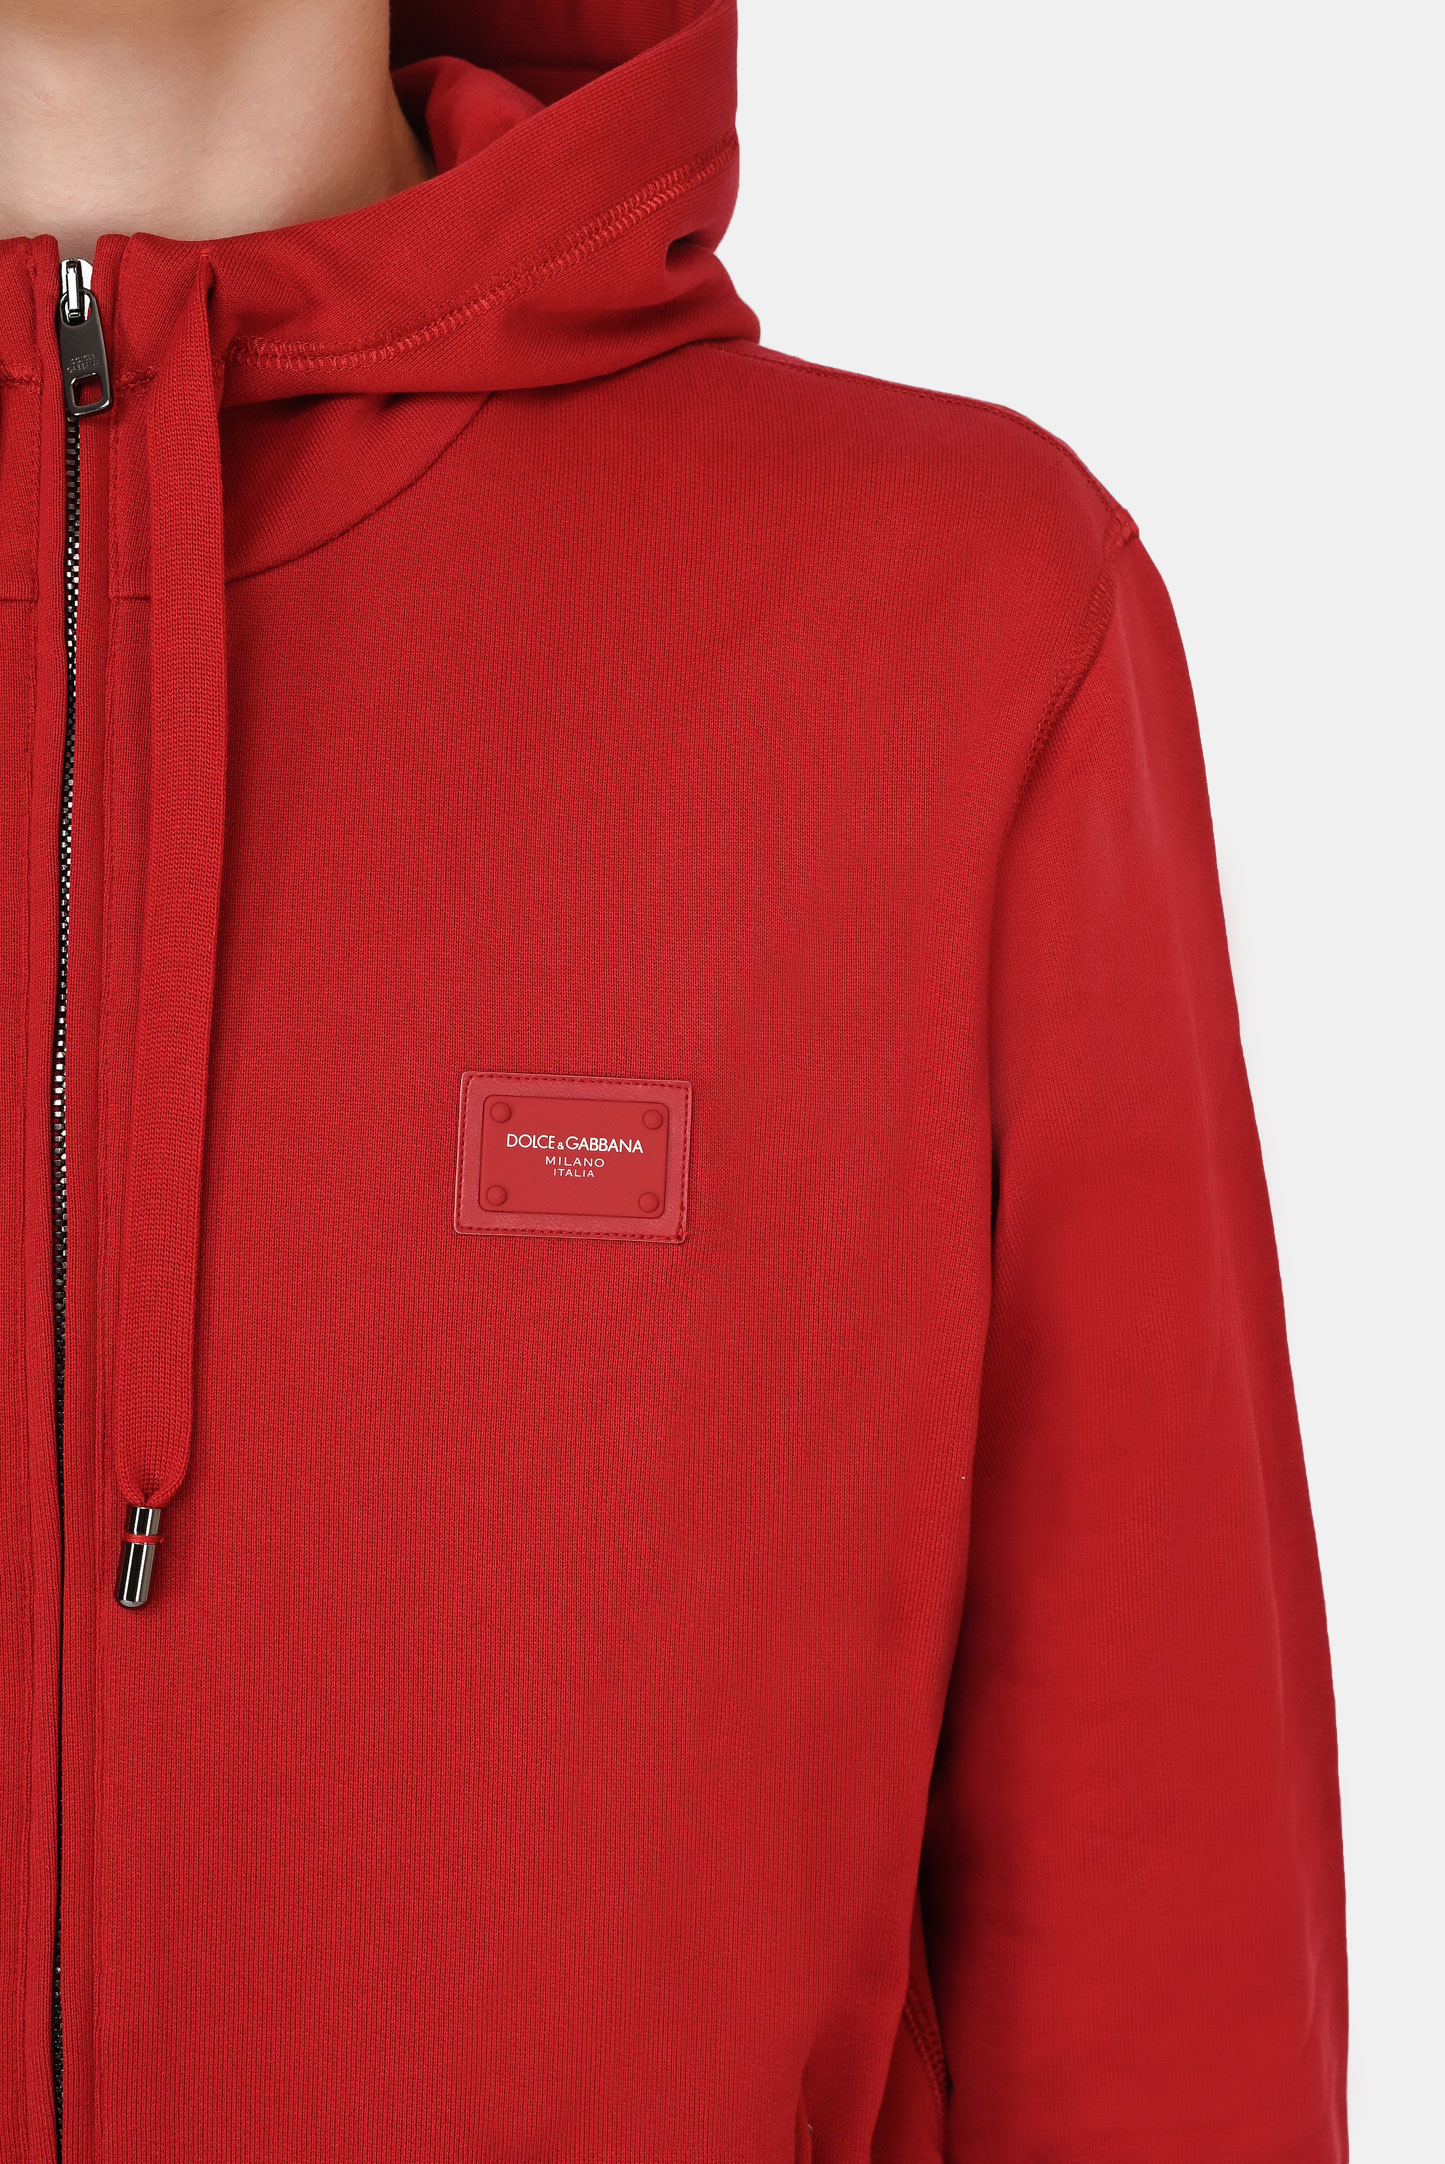 Куртка спорт DOLCE & GABBANA G9PD2T FU7DU, цвет: Красный, Мужской